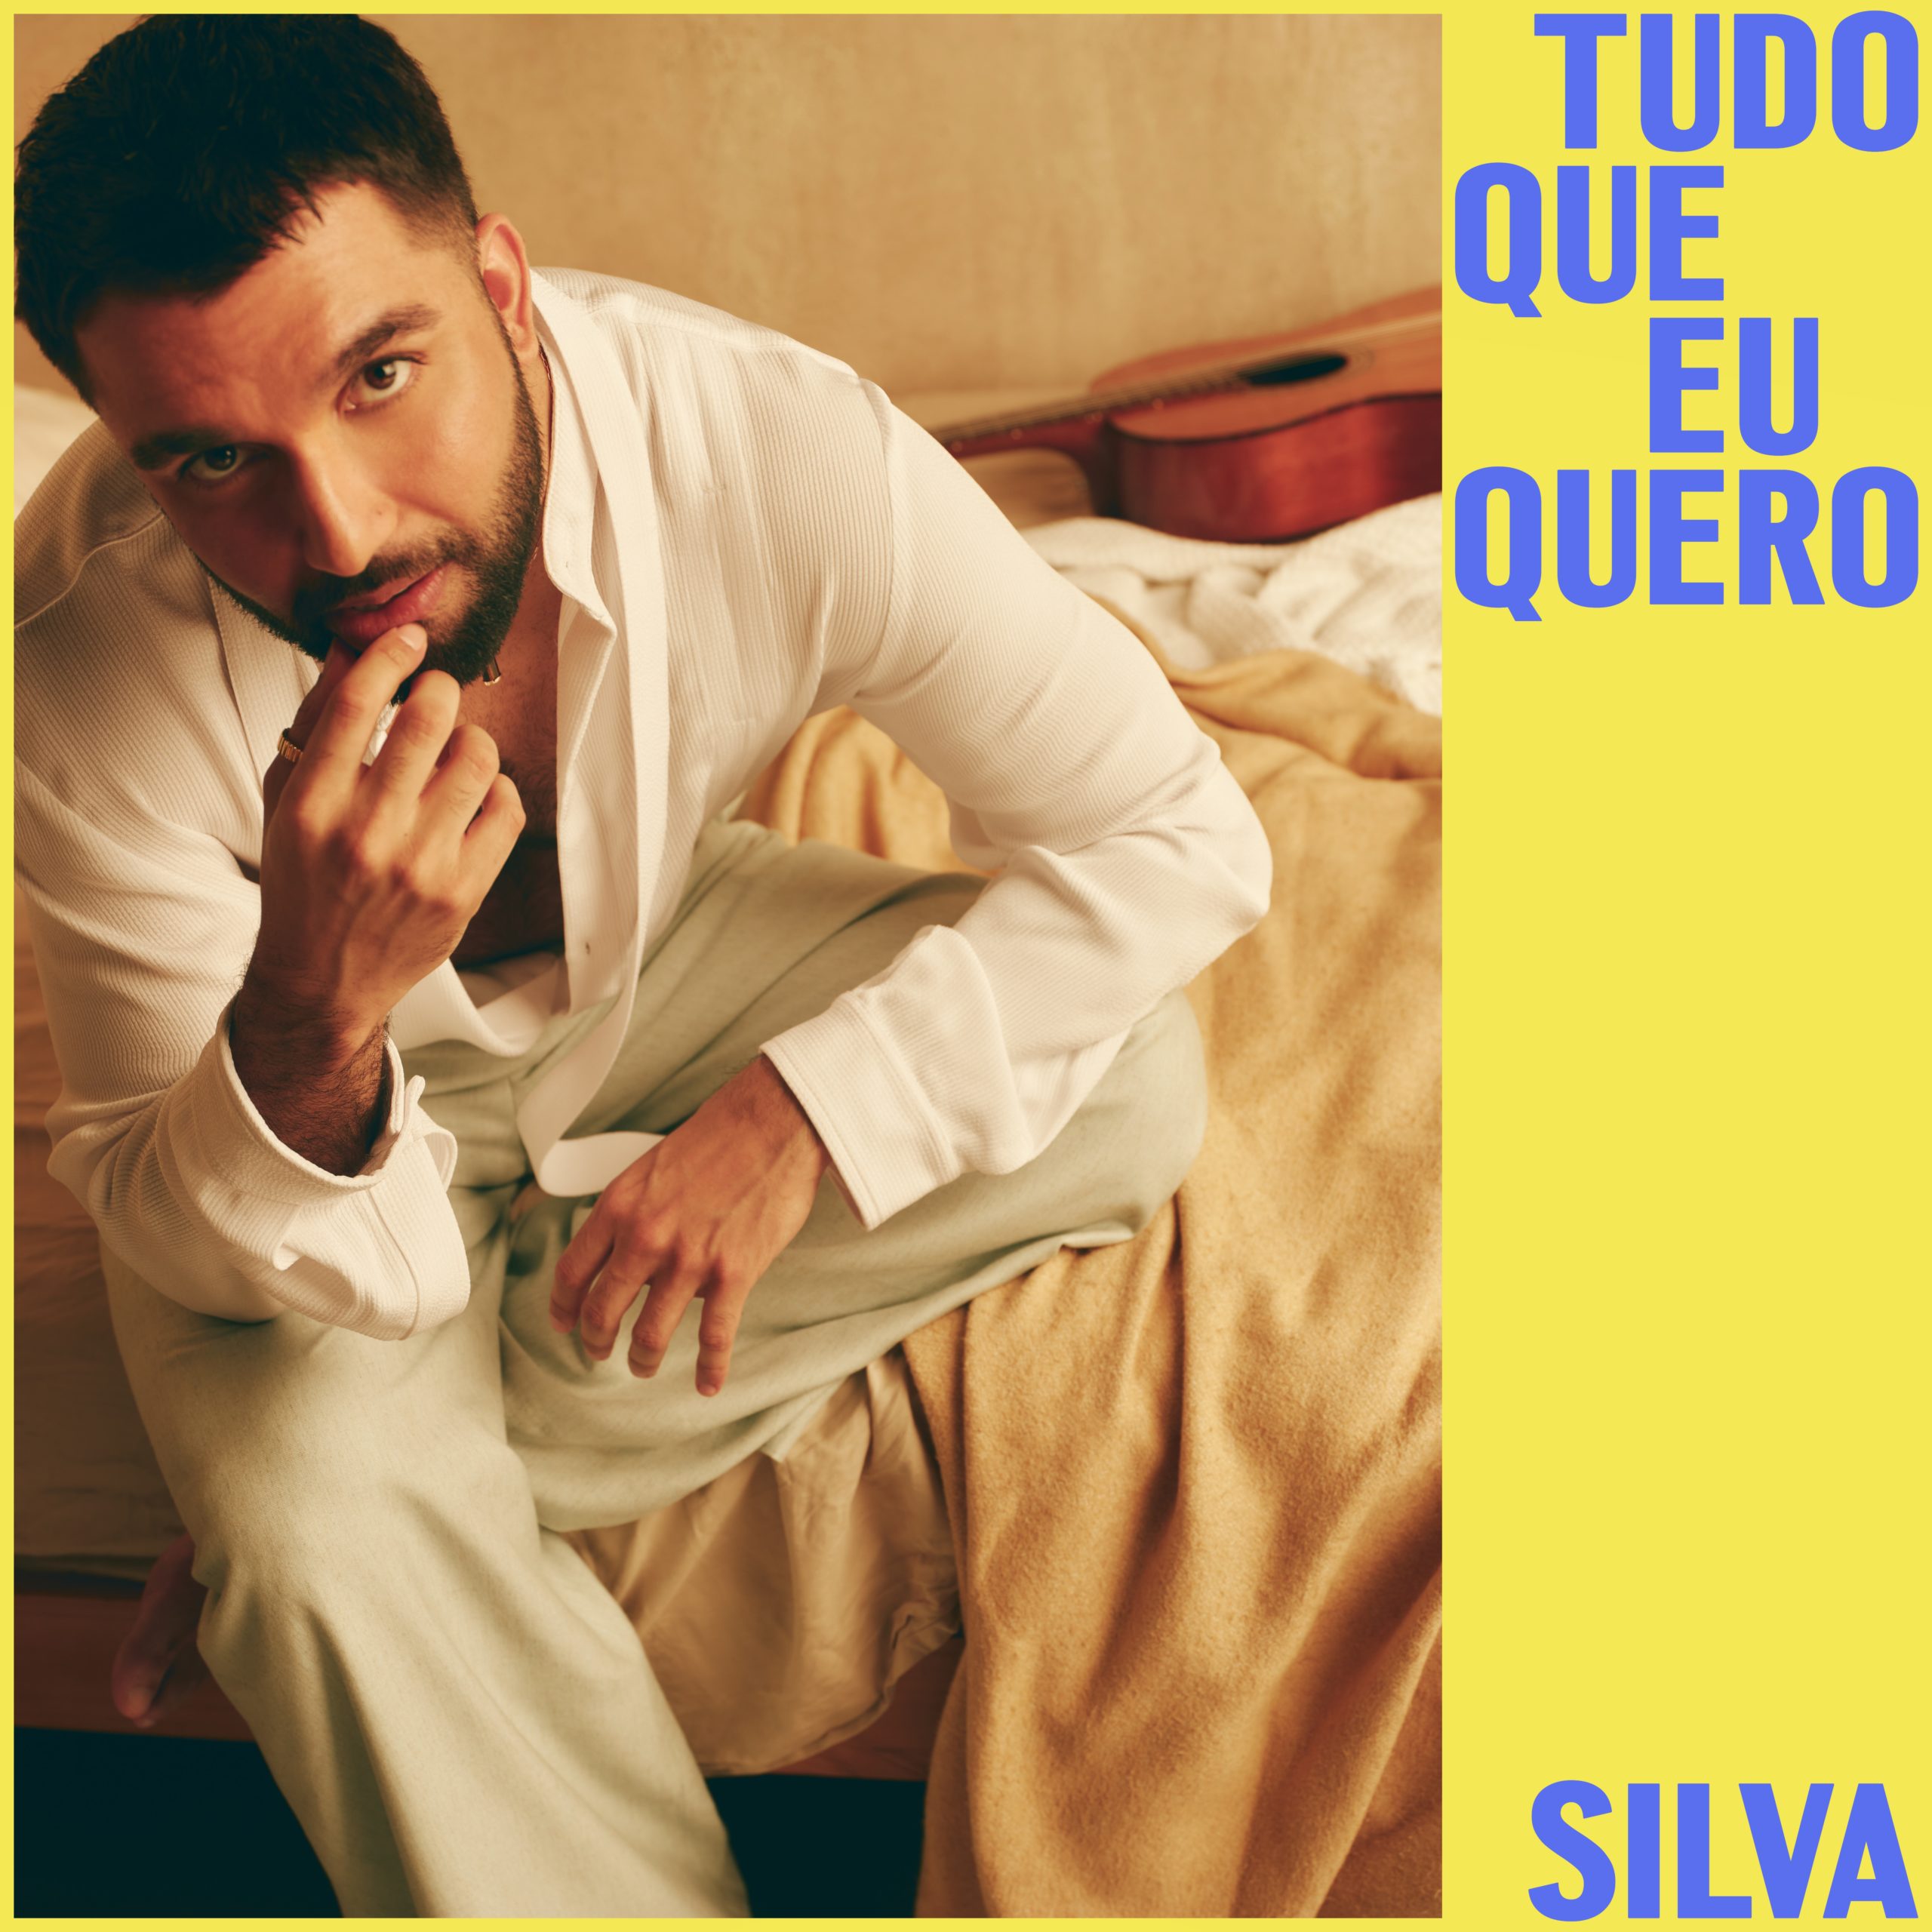 Silva se declara na inédita "Tudo Que Eu Quero" (Foto: Divulgação)